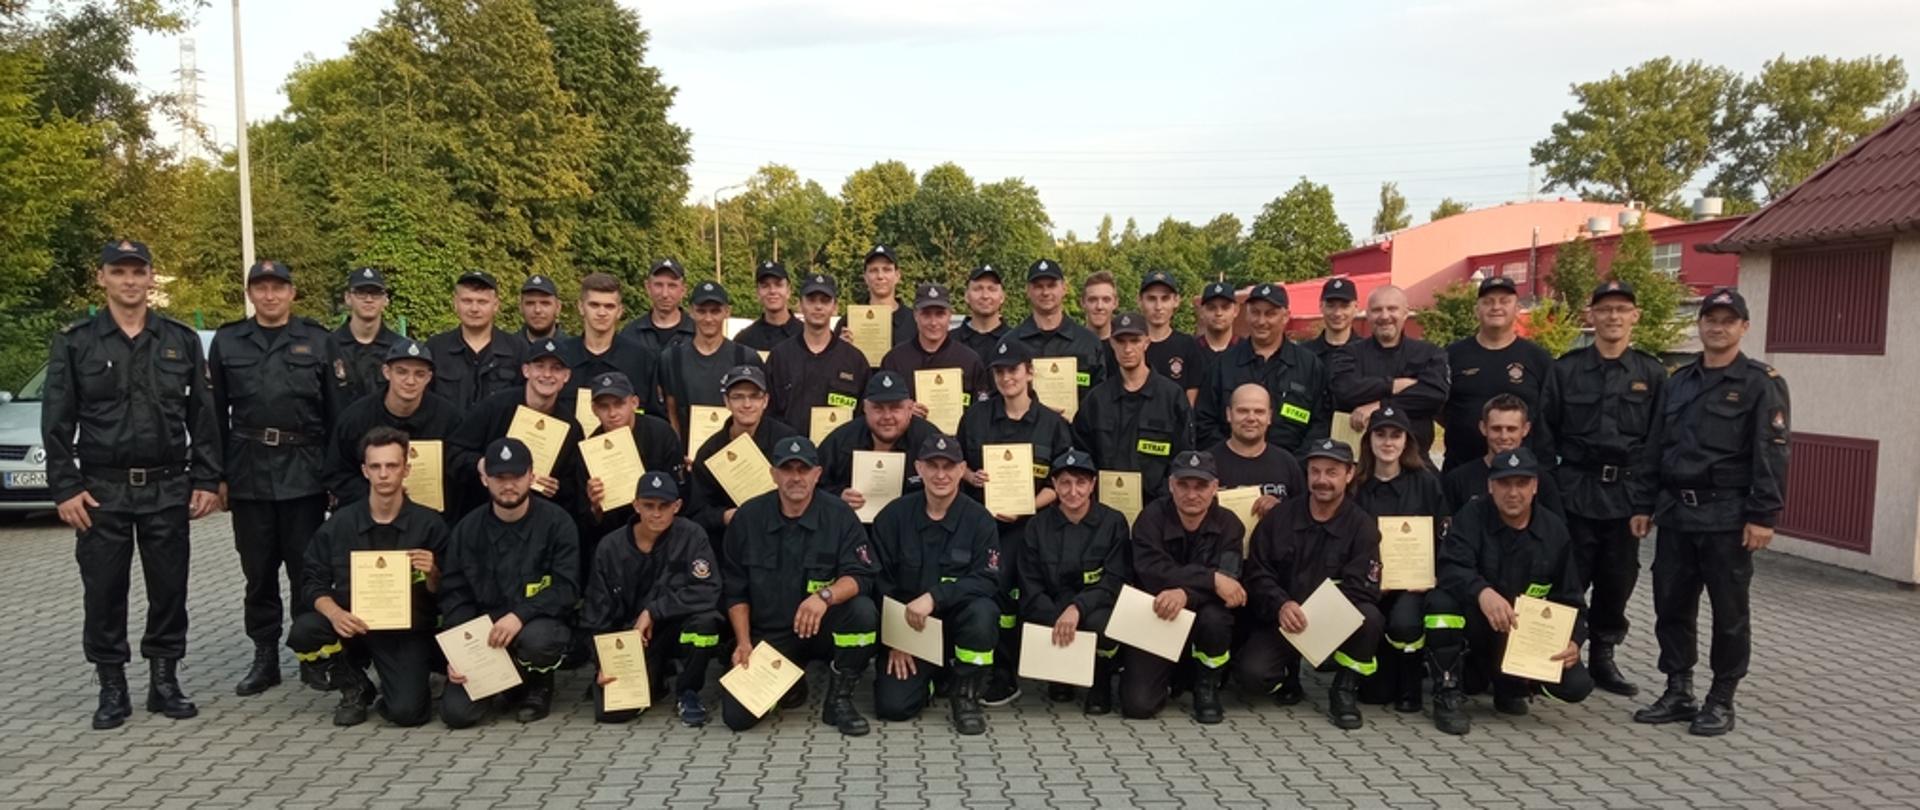 Na zdjęciu strażacy z Ochotniczych Straży Pożarnych po egzaminie kończącym szkolenie podstawowe strażaków ratowników OSP oraz komisja egzaminacyjna składająca się ze strażaków z PSP. Strażacy ubrani w ubrania koszarowe i dowódczo-sztabowe koloru czarnego w czarnych czapkach.